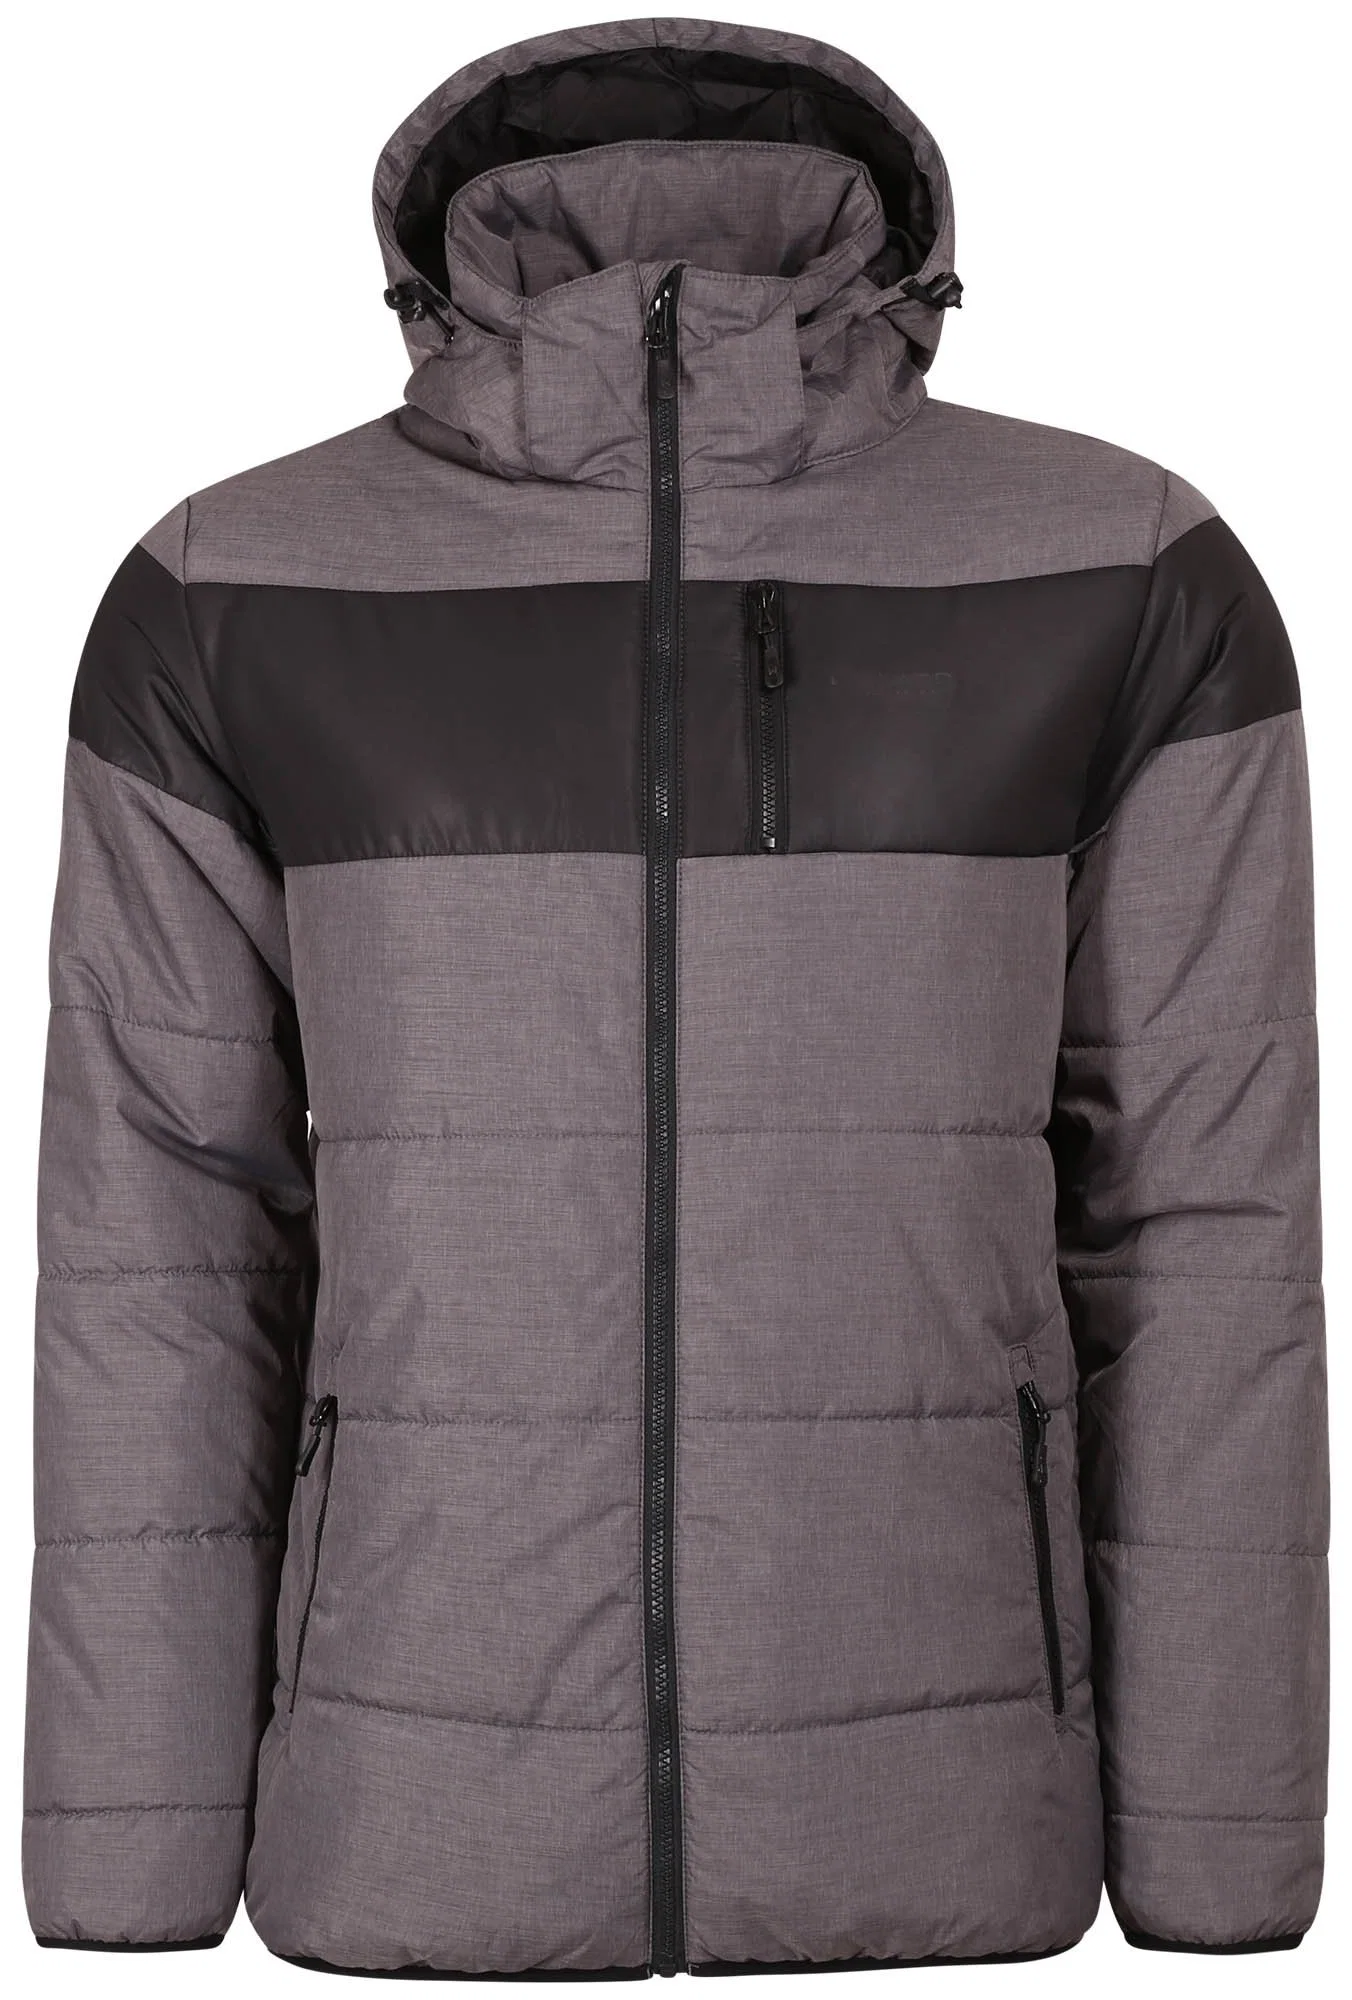 Henglong Puffer Chaqueta de invierno personalizada para los hombres Outwear Casual abrigos de alta calidad de los hombres chaqueta acolchada